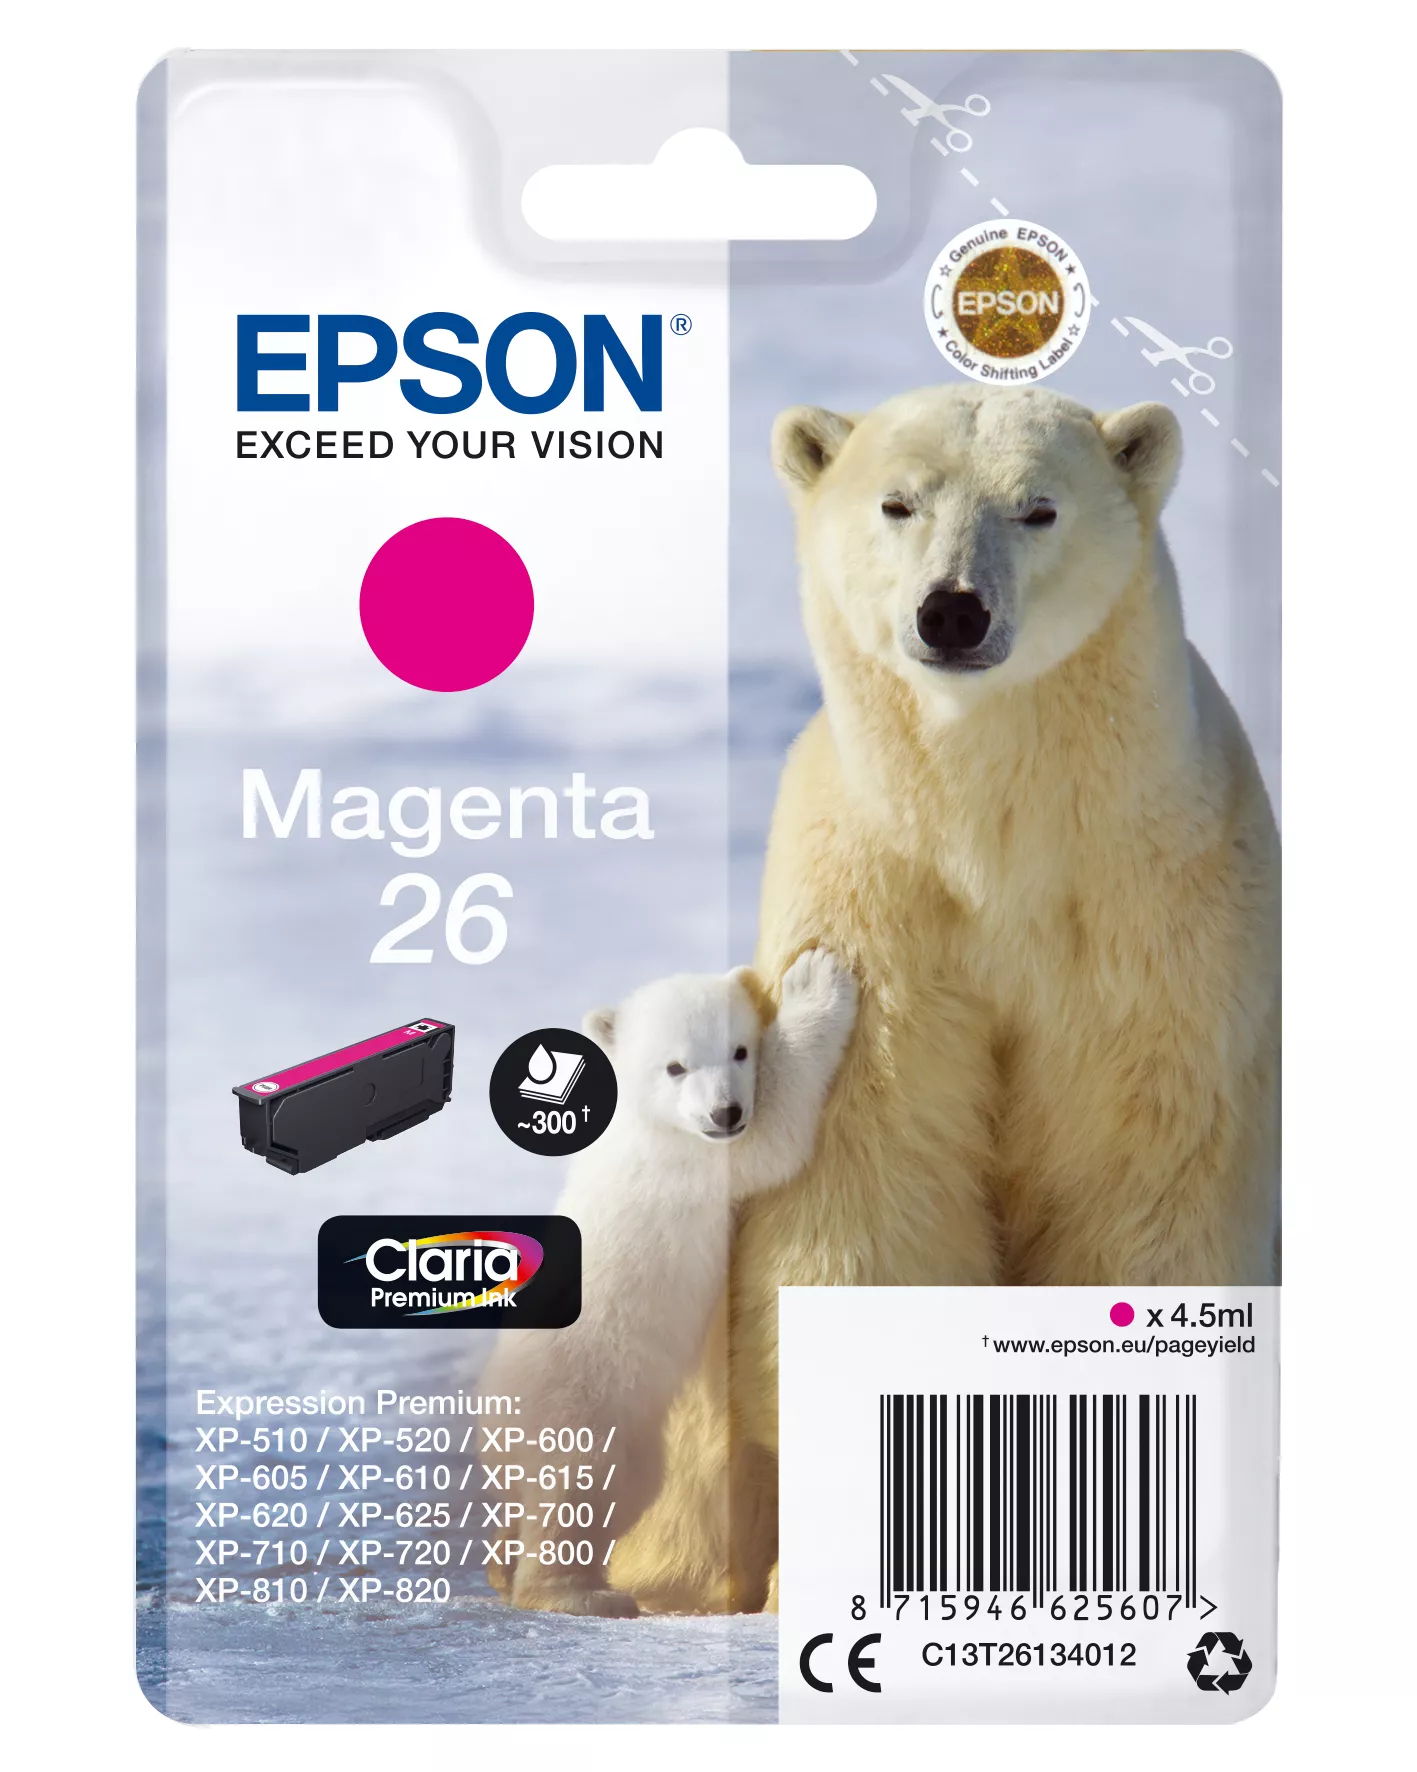 Vente EPSON 26 cartouche encre magenta capacité standard 4.5ml au meilleur prix